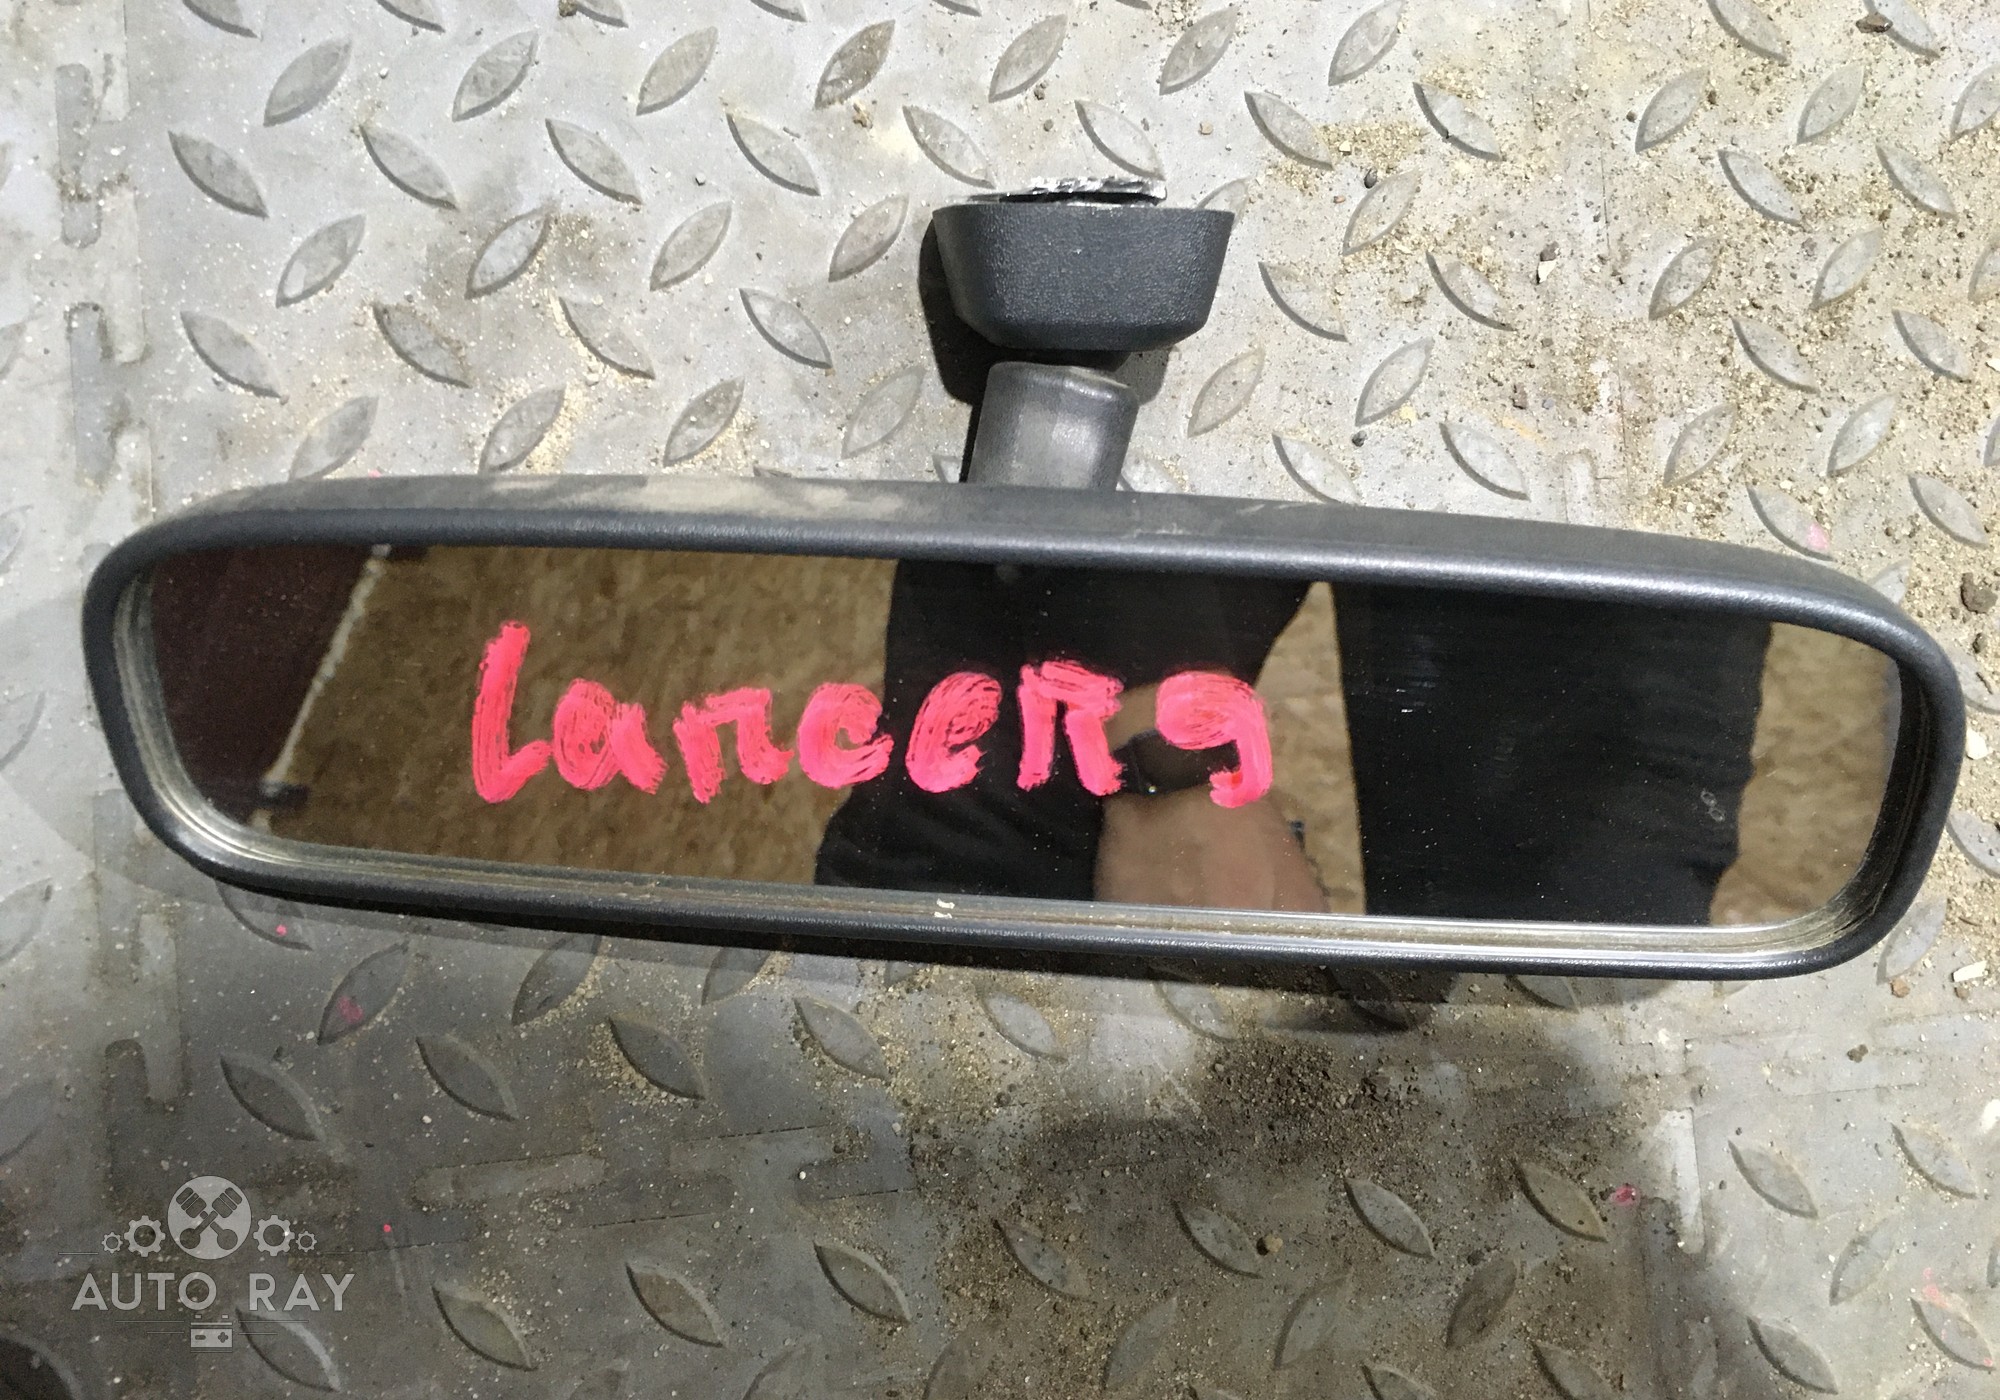 MN124448 Зеркало заднего вида салонное для Mitsubishi Lancer IX (с 2000 по 2010)